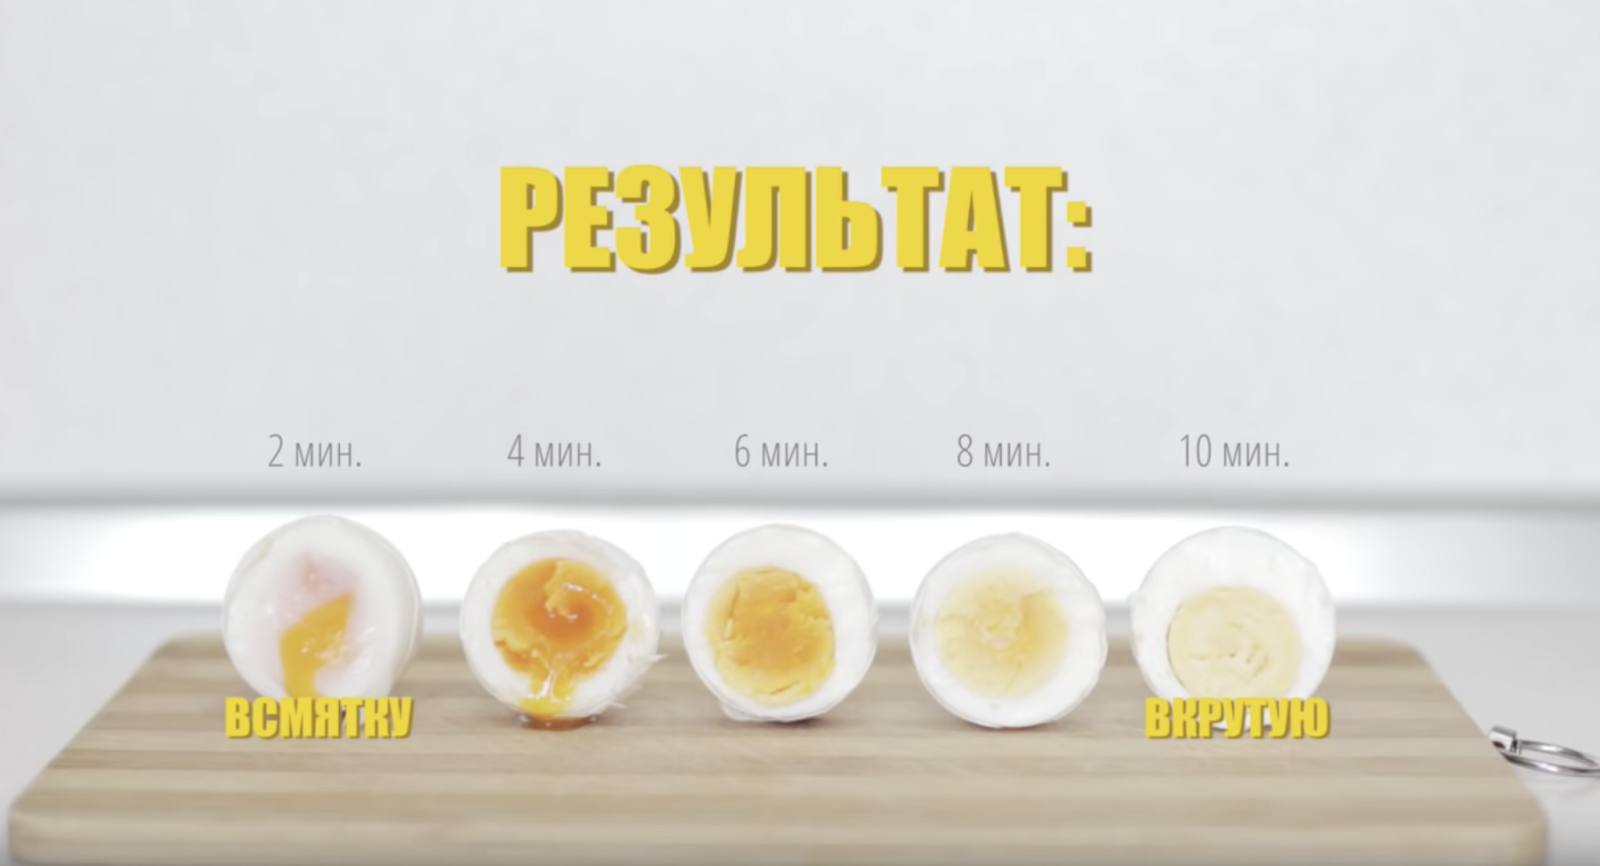 Сколько нужно варить яйцо всмятку после закипания. Сколько варить яйца. Яйцо в мсятку после закипания аолв. Для варки яиц всмятку. Варка яиц после закипания воды.